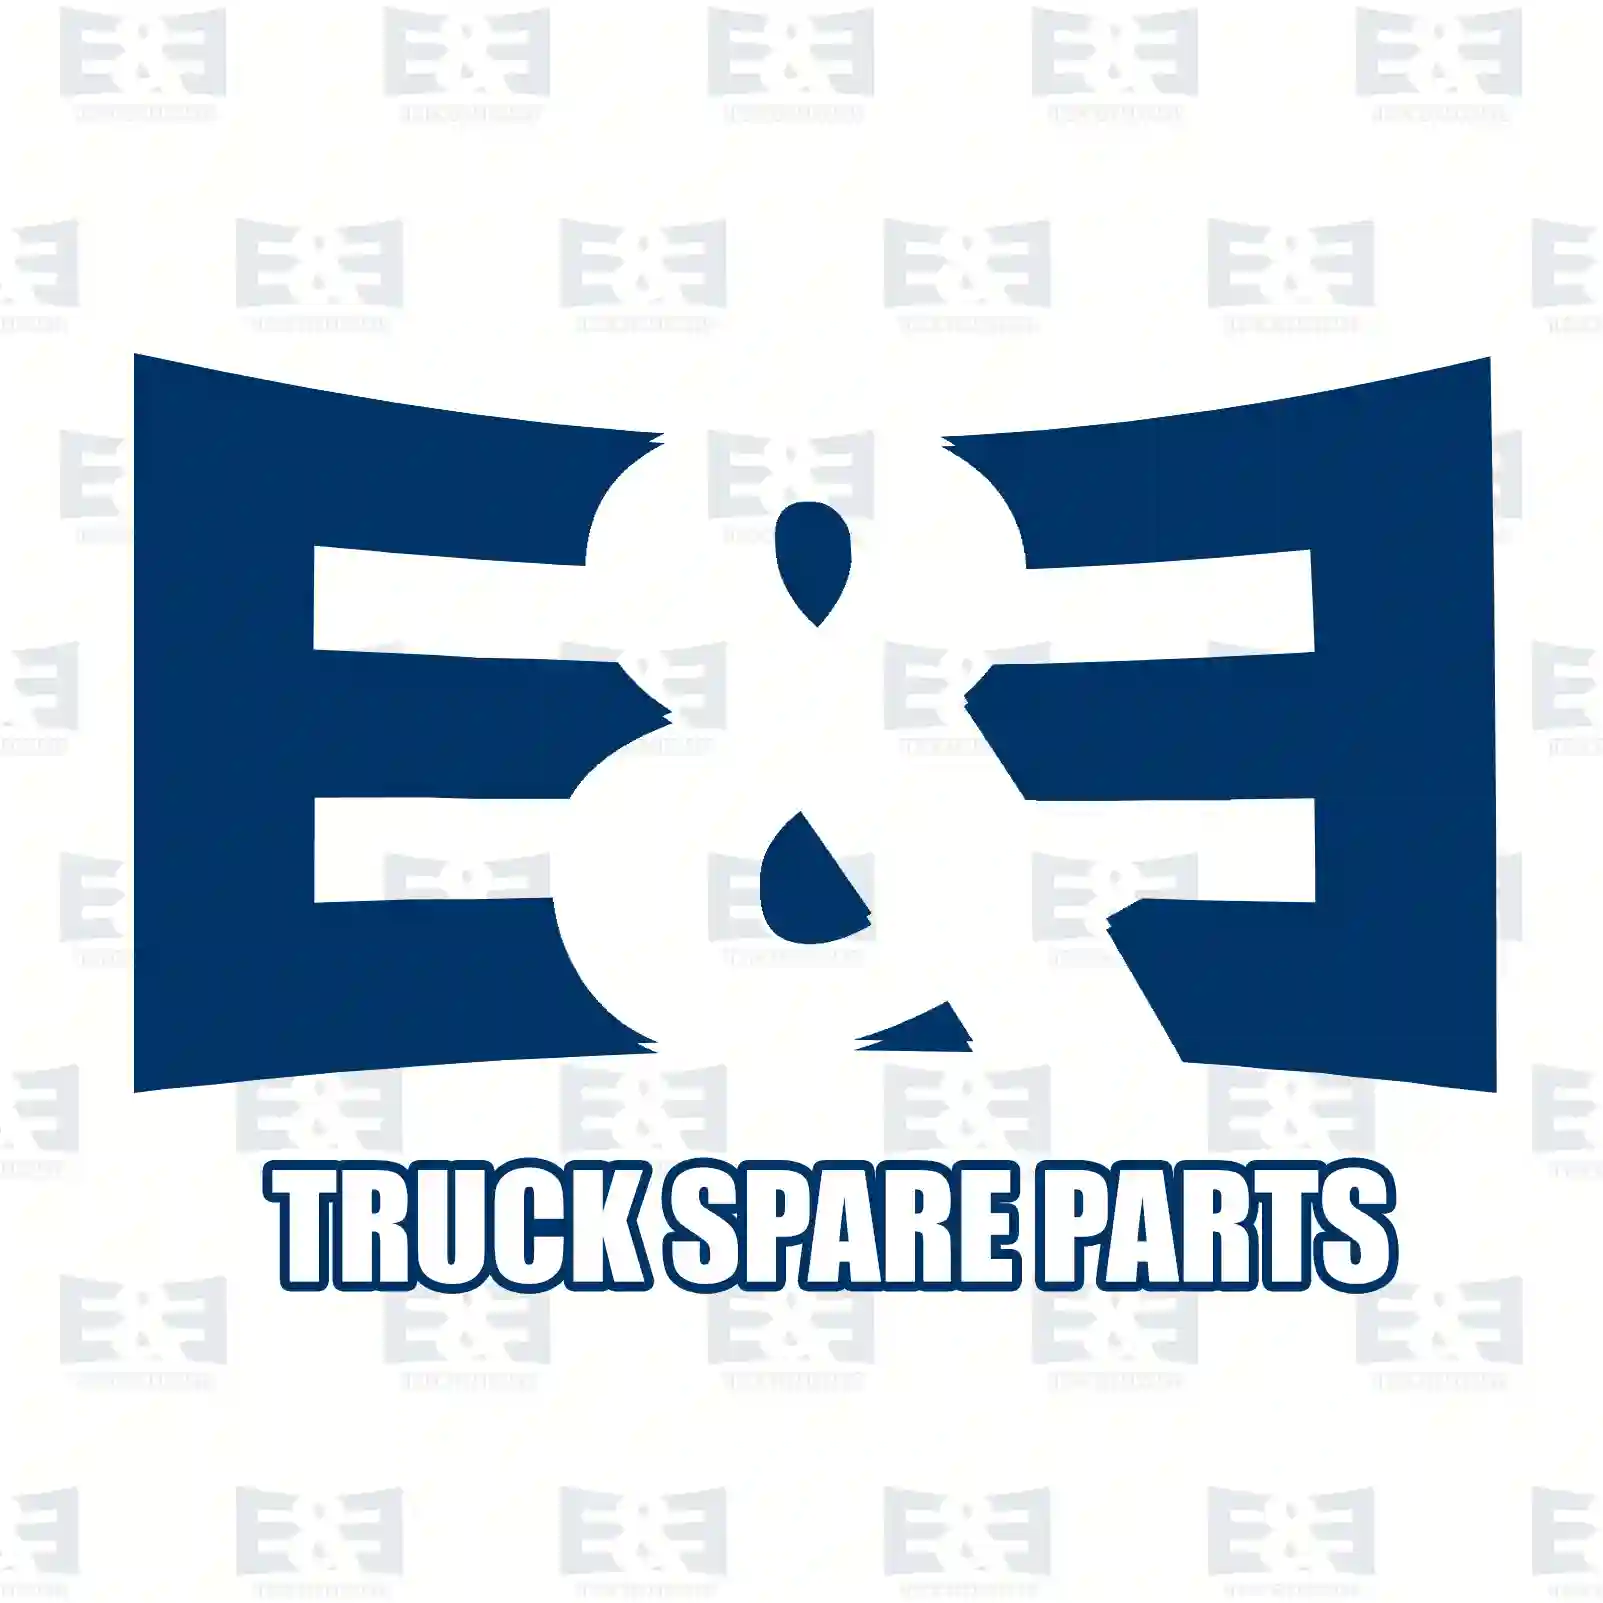 Shock absorber, 2E2283741, 85437016011, , , , , , ||  2E2283741 E&E Truck Spare Parts | Truck Spare Parts, Auotomotive Spare Parts Shock absorber, 2E2283741, 85437016011, , , , , , ||  2E2283741 E&E Truck Spare Parts | Truck Spare Parts, Auotomotive Spare Parts